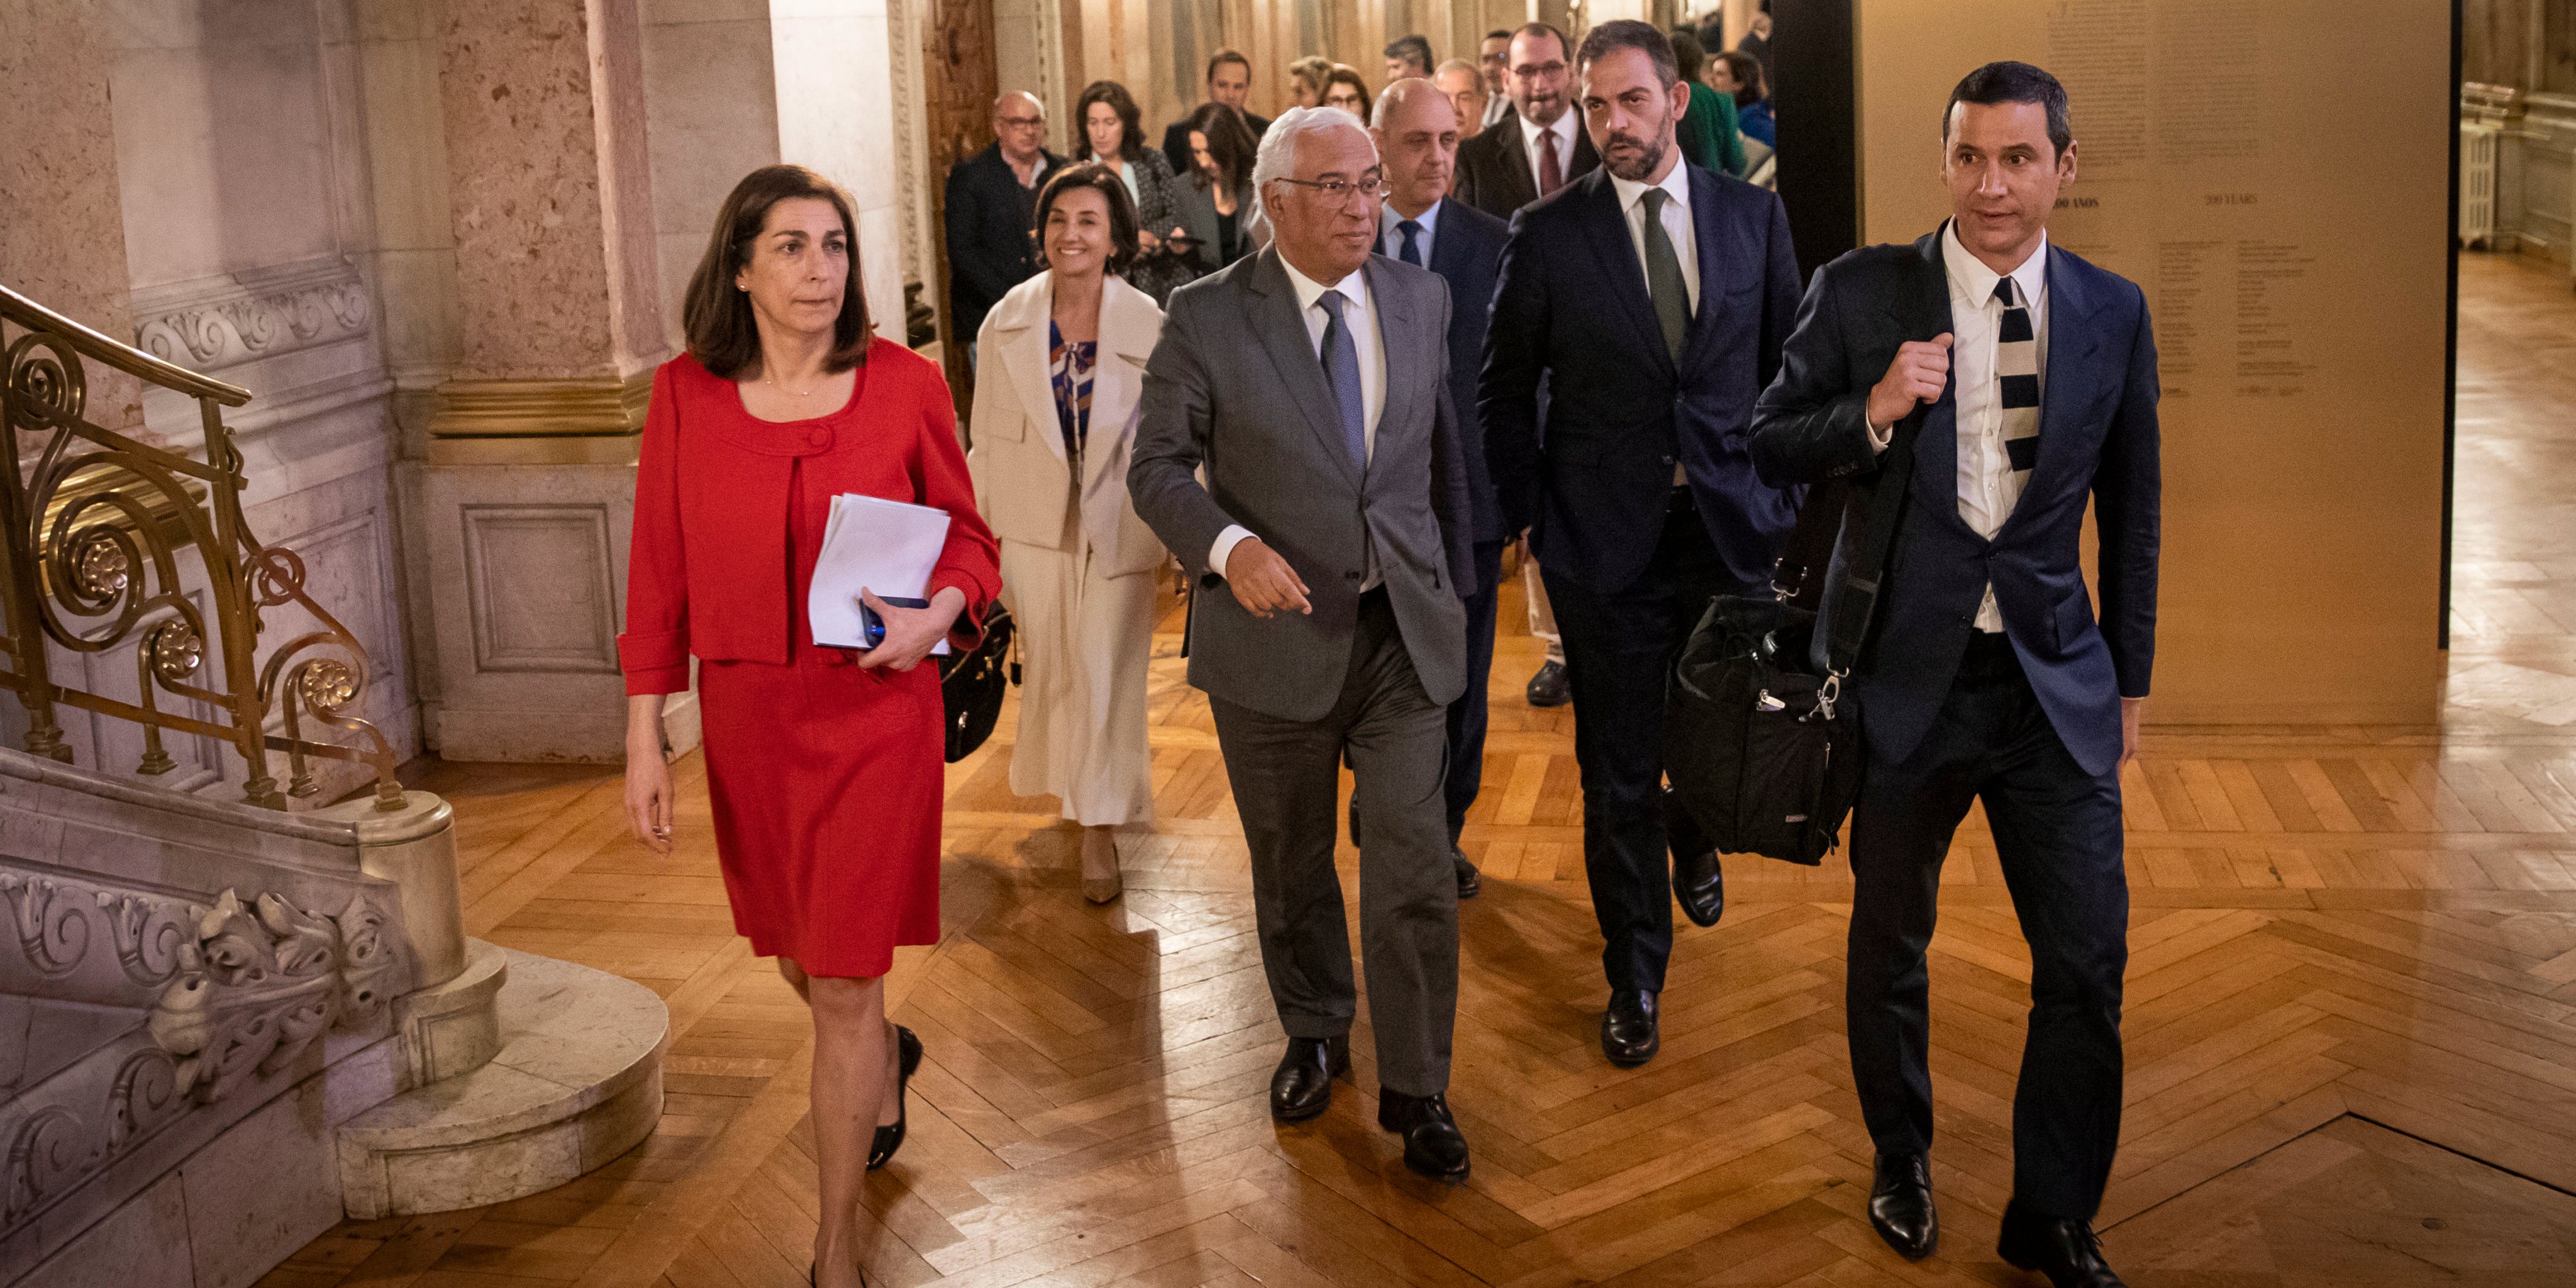 À saída do Parlamento, a ministra da Agricultura, Maria do Céu Antunes, seguia sorridente mesmo atrás do primeiro-ministro.